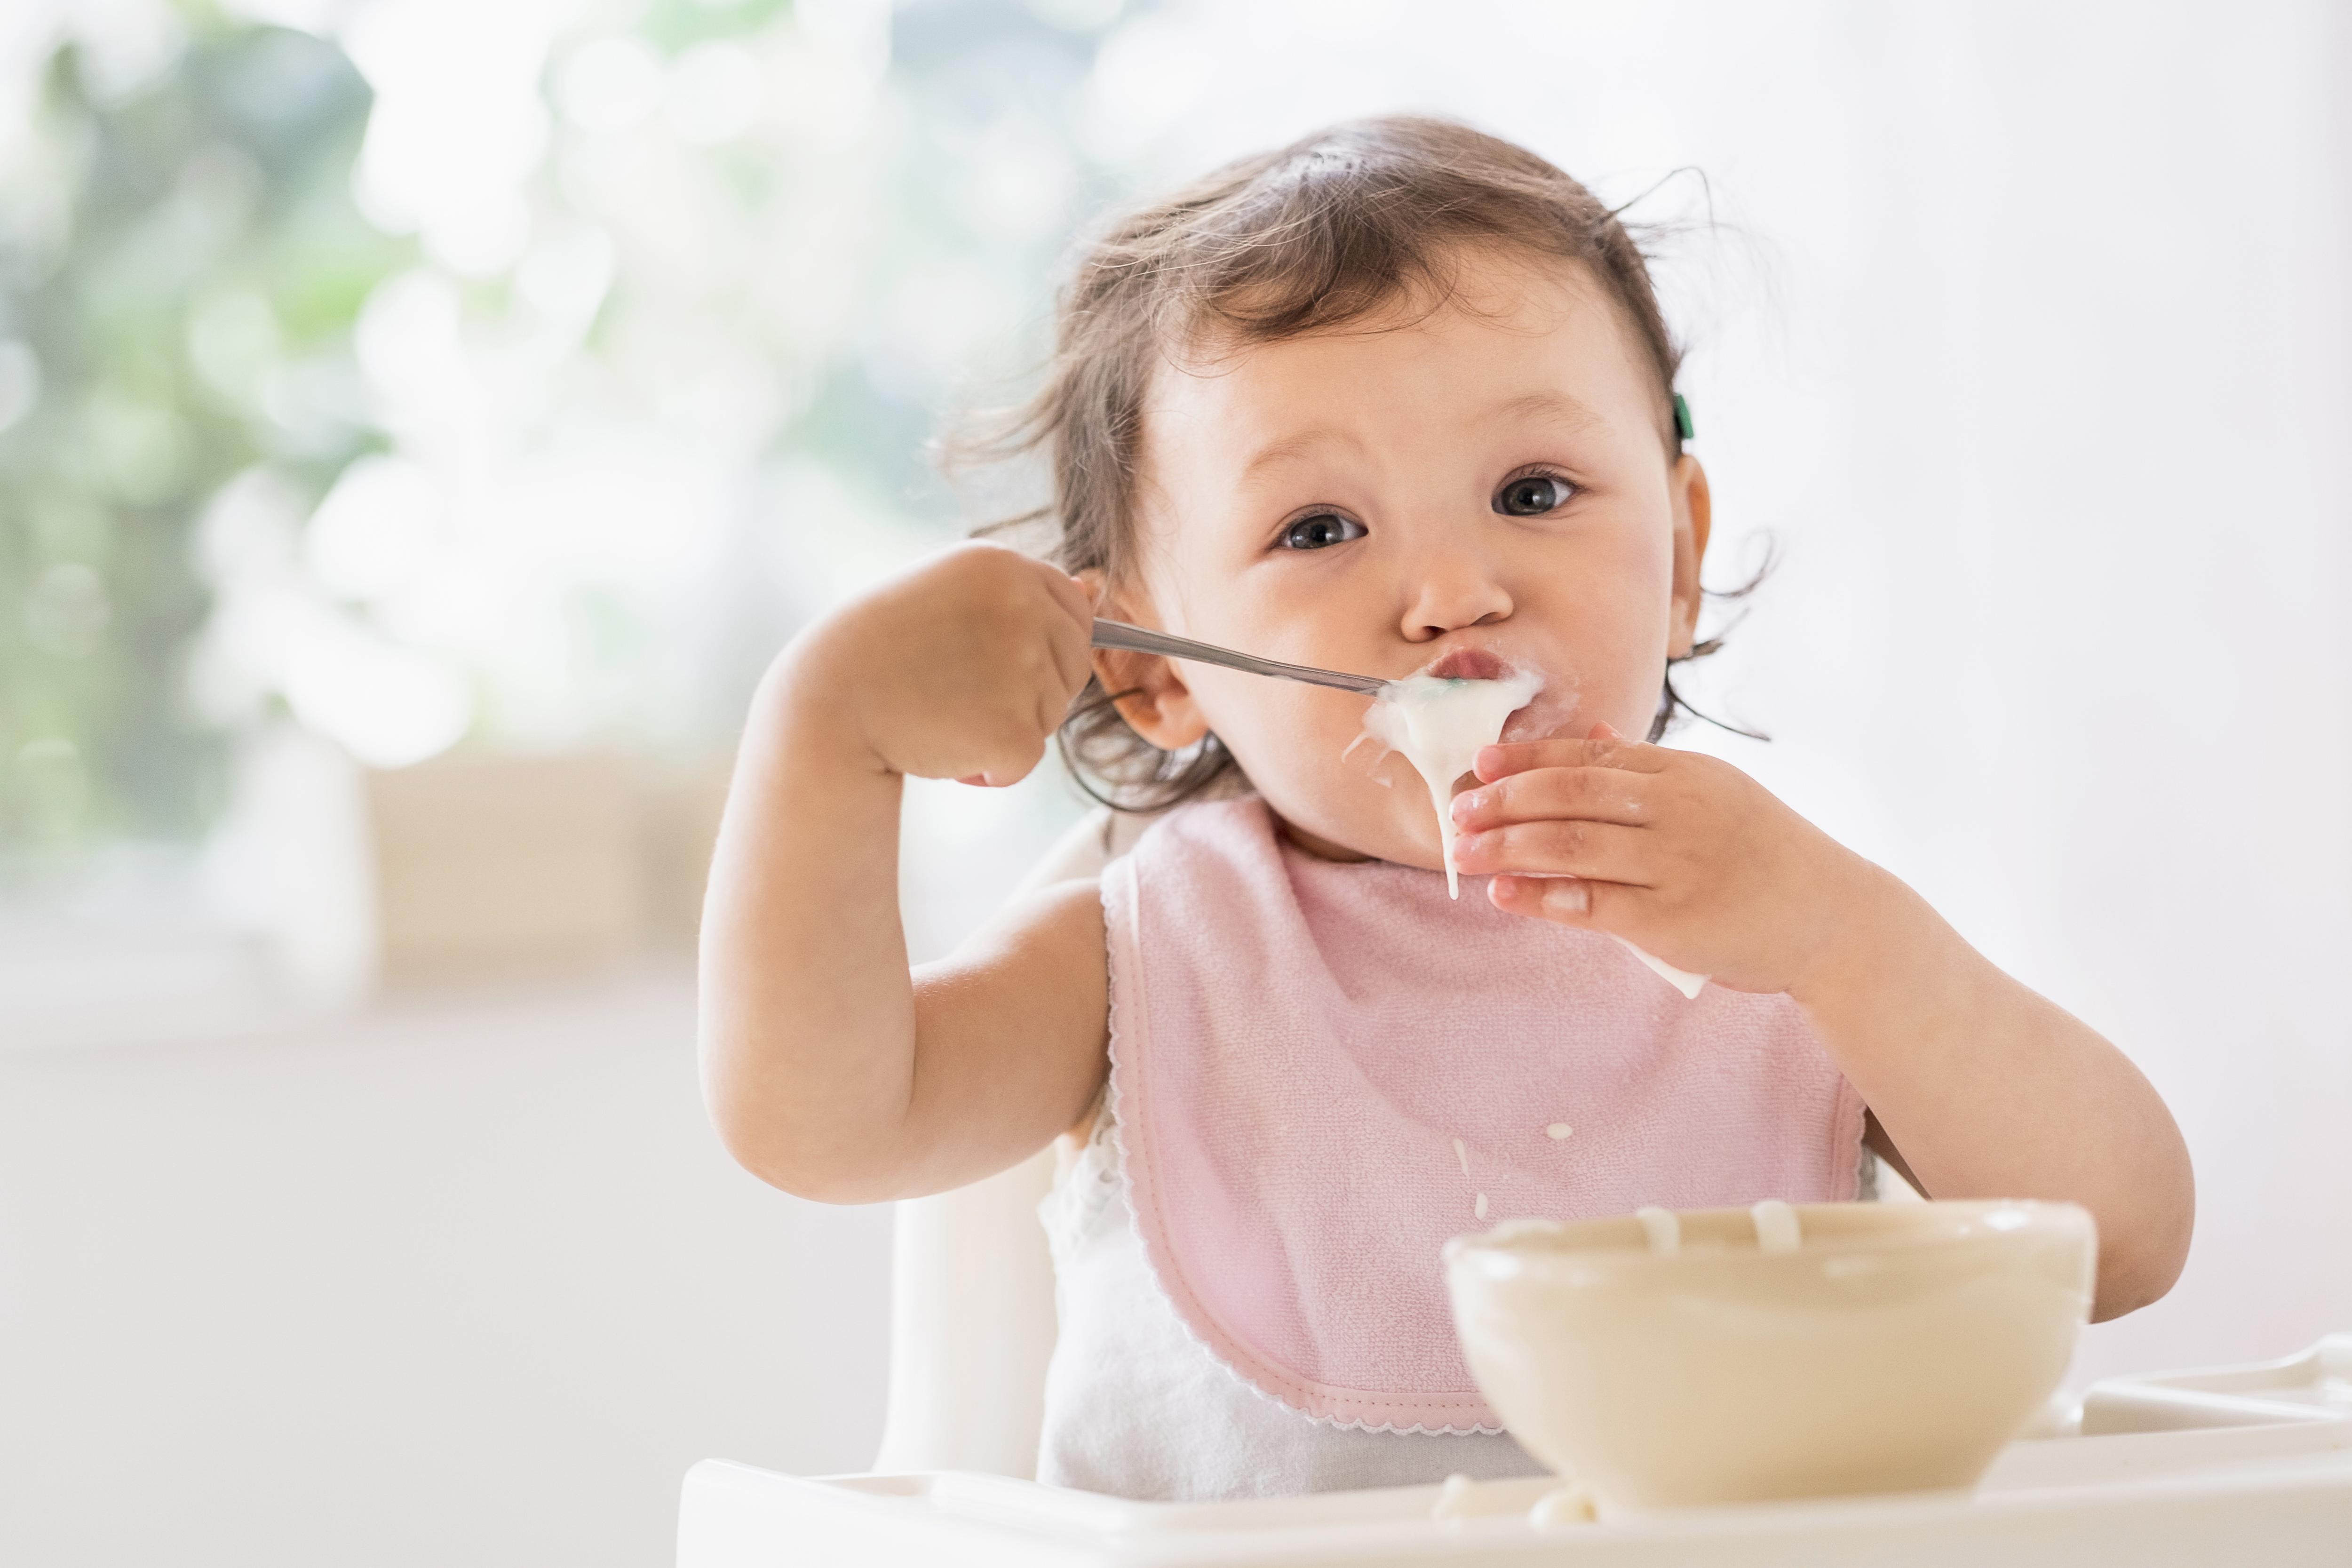 Детское питание — из баночки или своими руками? Плюсы и минусы